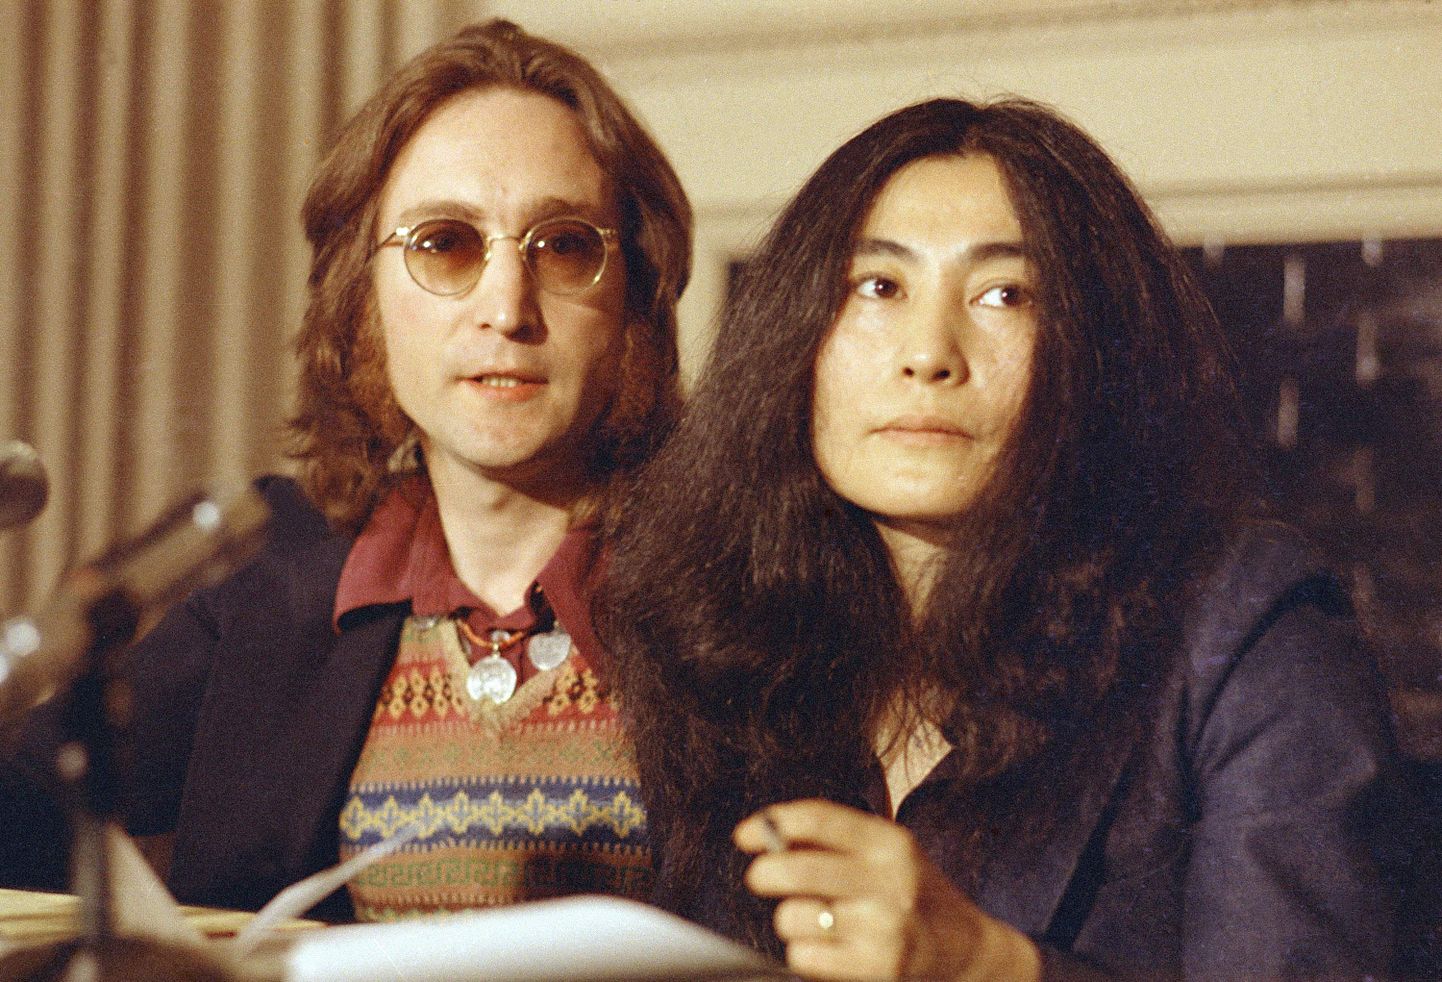 John Lennon ja Yoko Ono aastal 1973